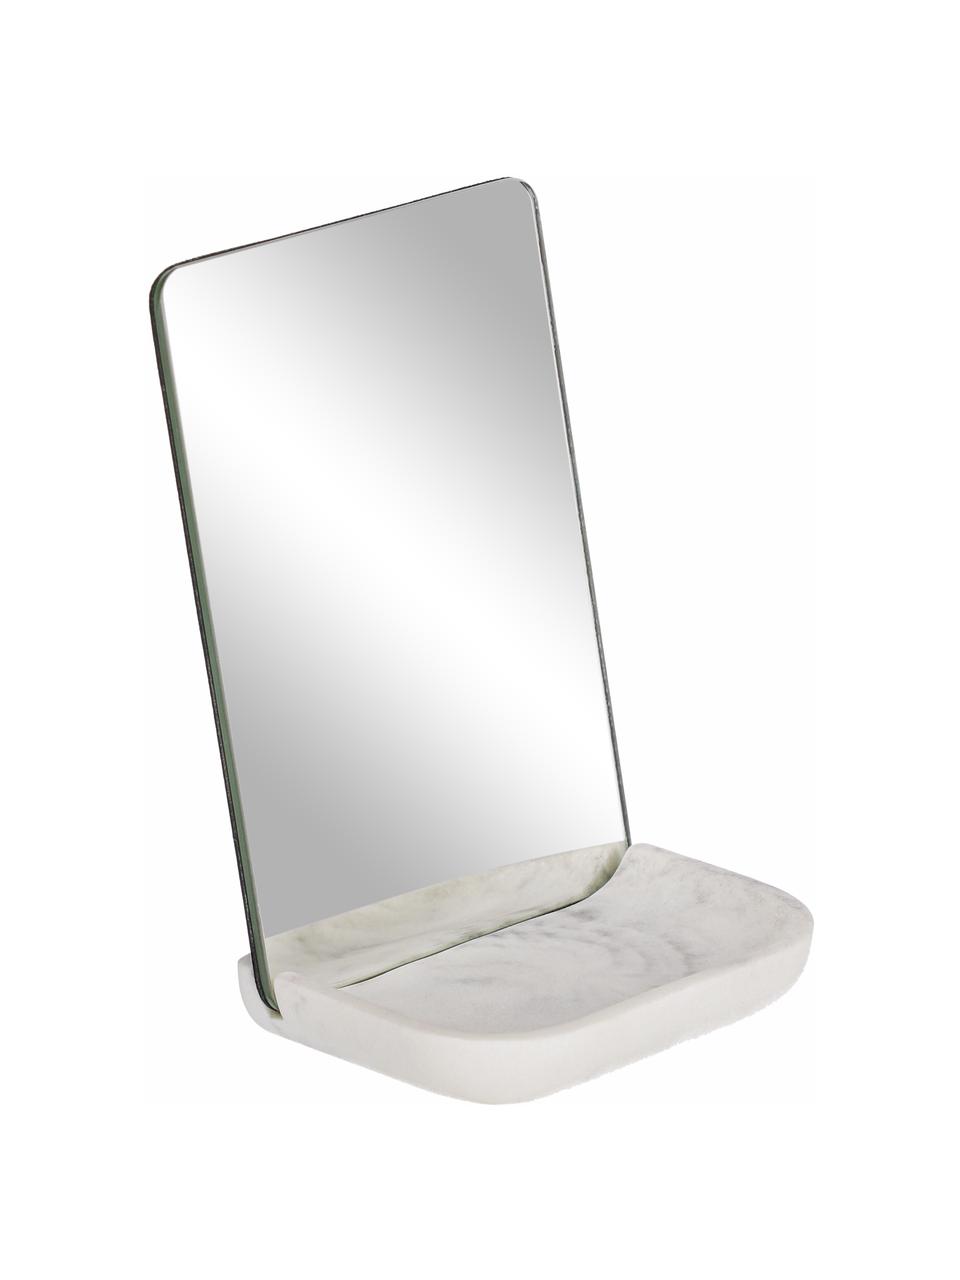 Kosmetické zrcadlo s policí s mramorým vzhledem Sharif, Bílá, šedá, Š 12 cm, V 18 cm